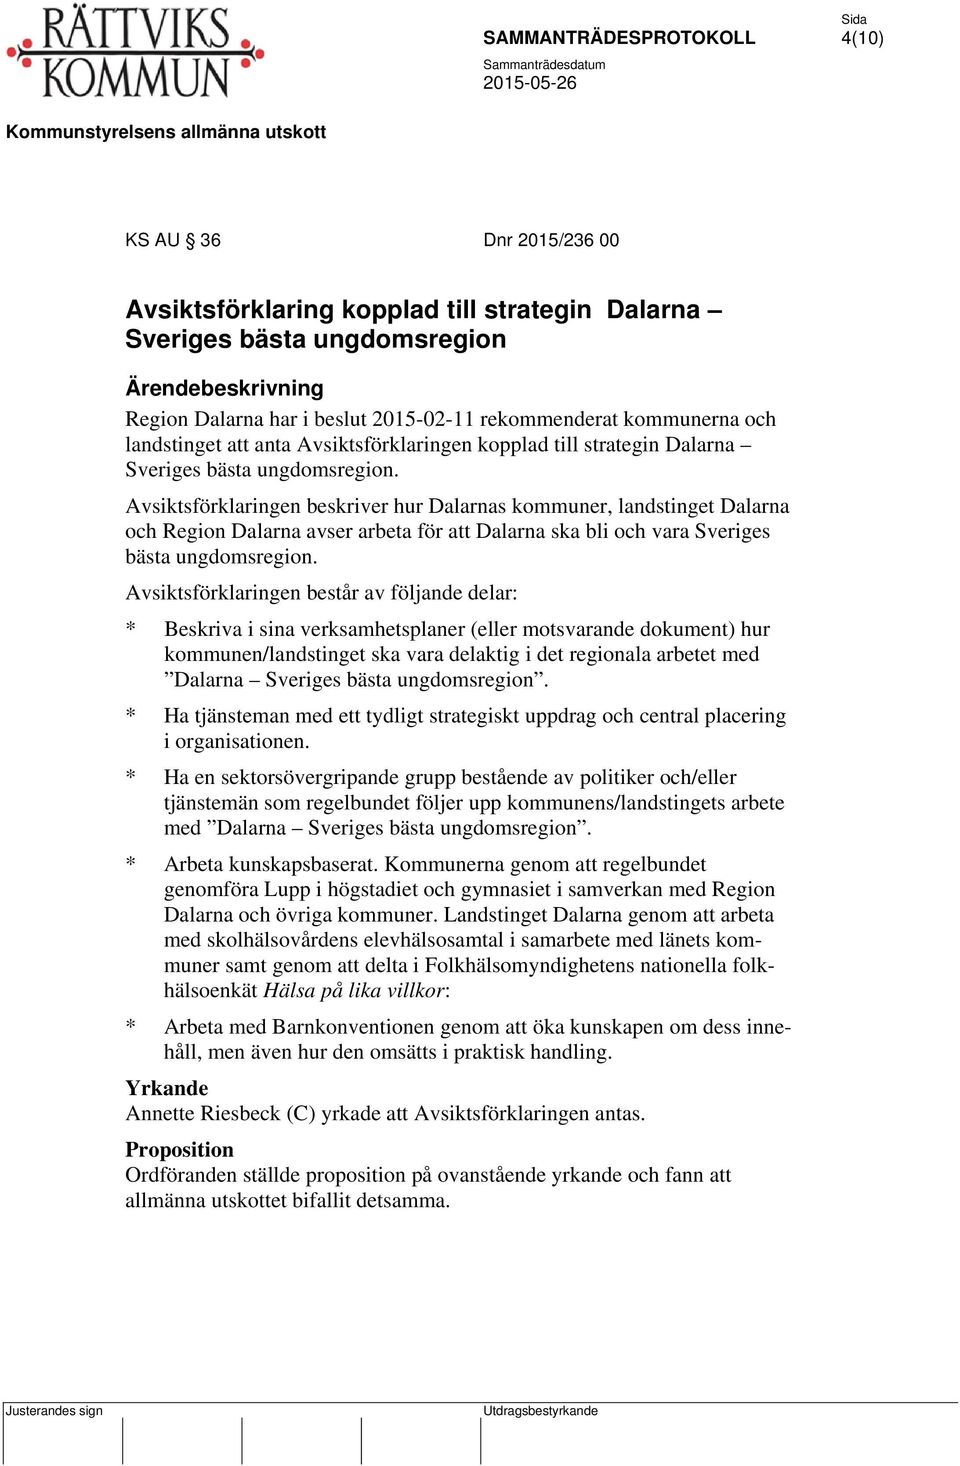 Avsiktsförklaringen beskriver hur Dalarnas kommuner, landstinget Dalarna och Region Dalarna avser arbeta för att Dalarna ska bli och vara Sveriges bästa ungdomsregion.